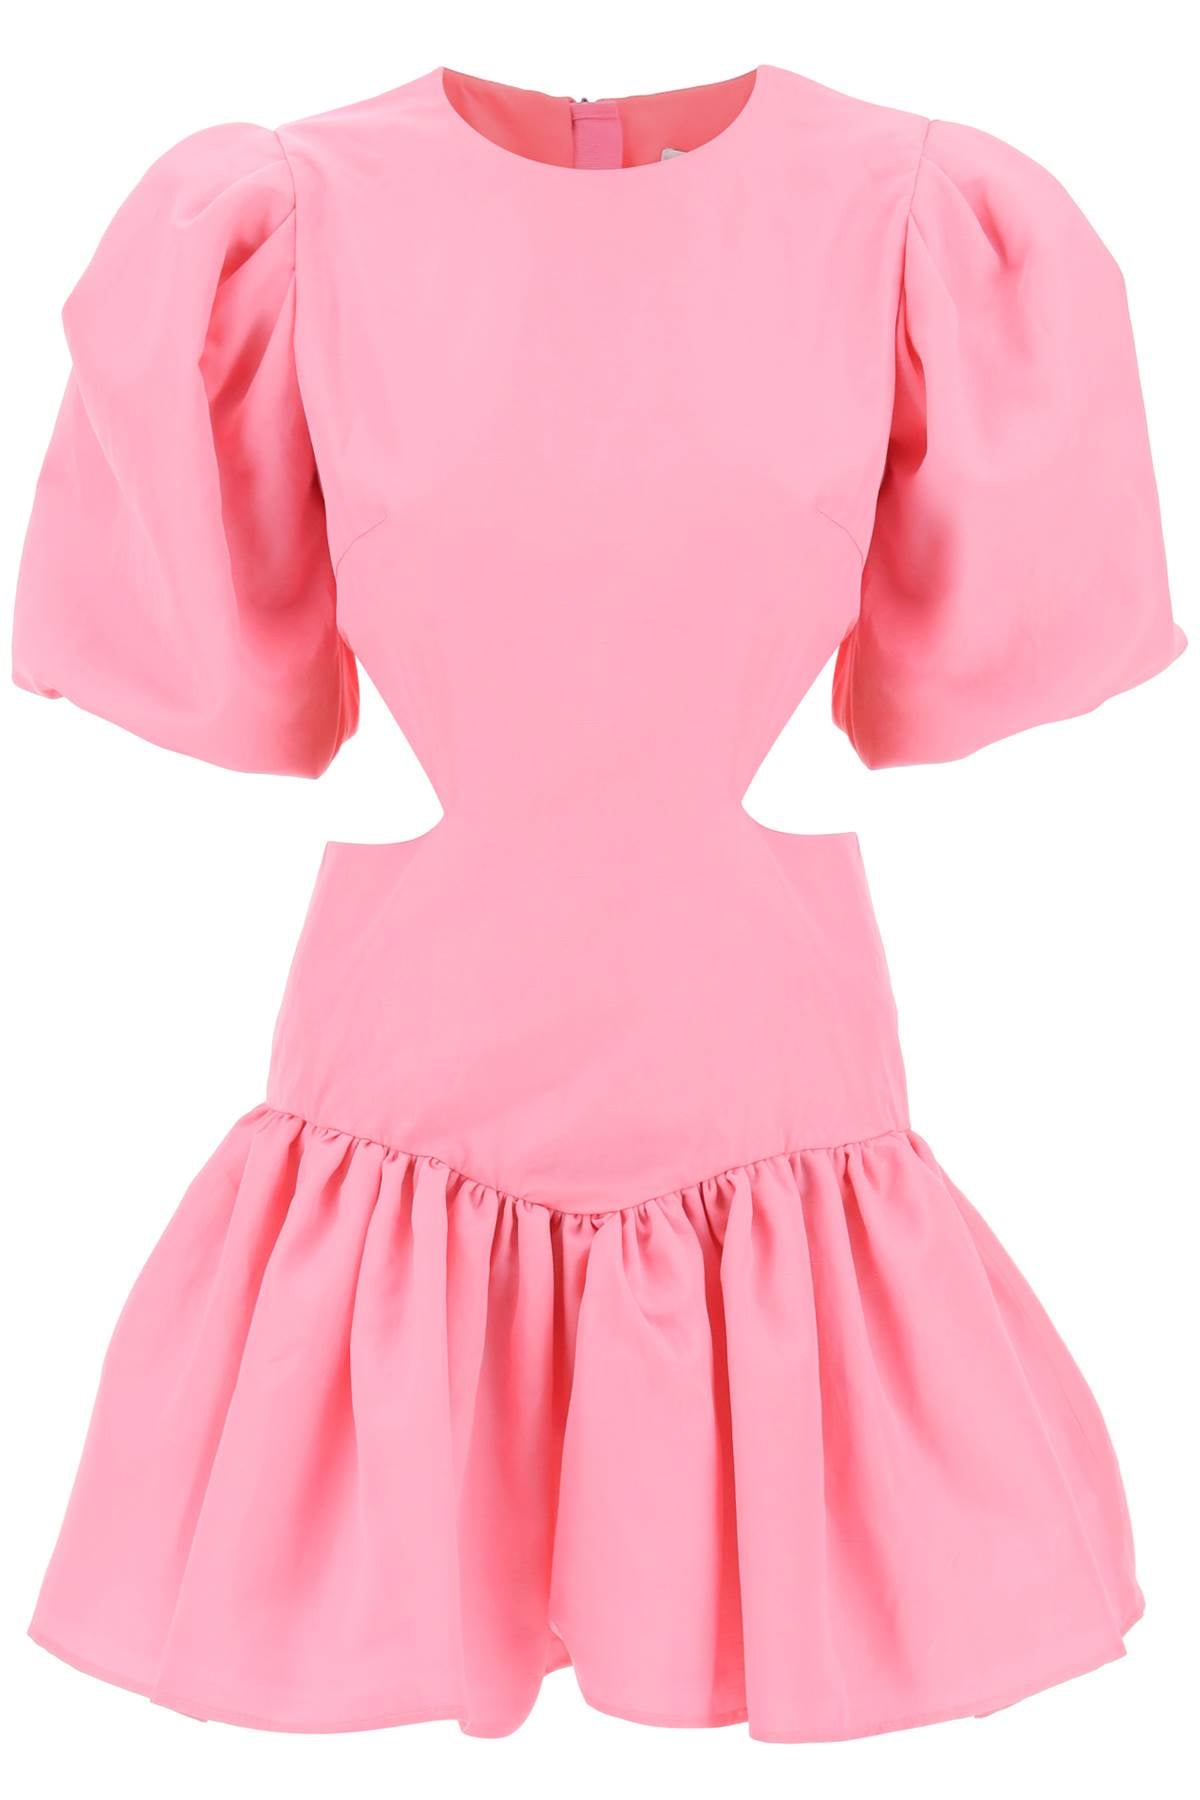 粉紅帶泡泡袖和開衩設計的迷你洋裝